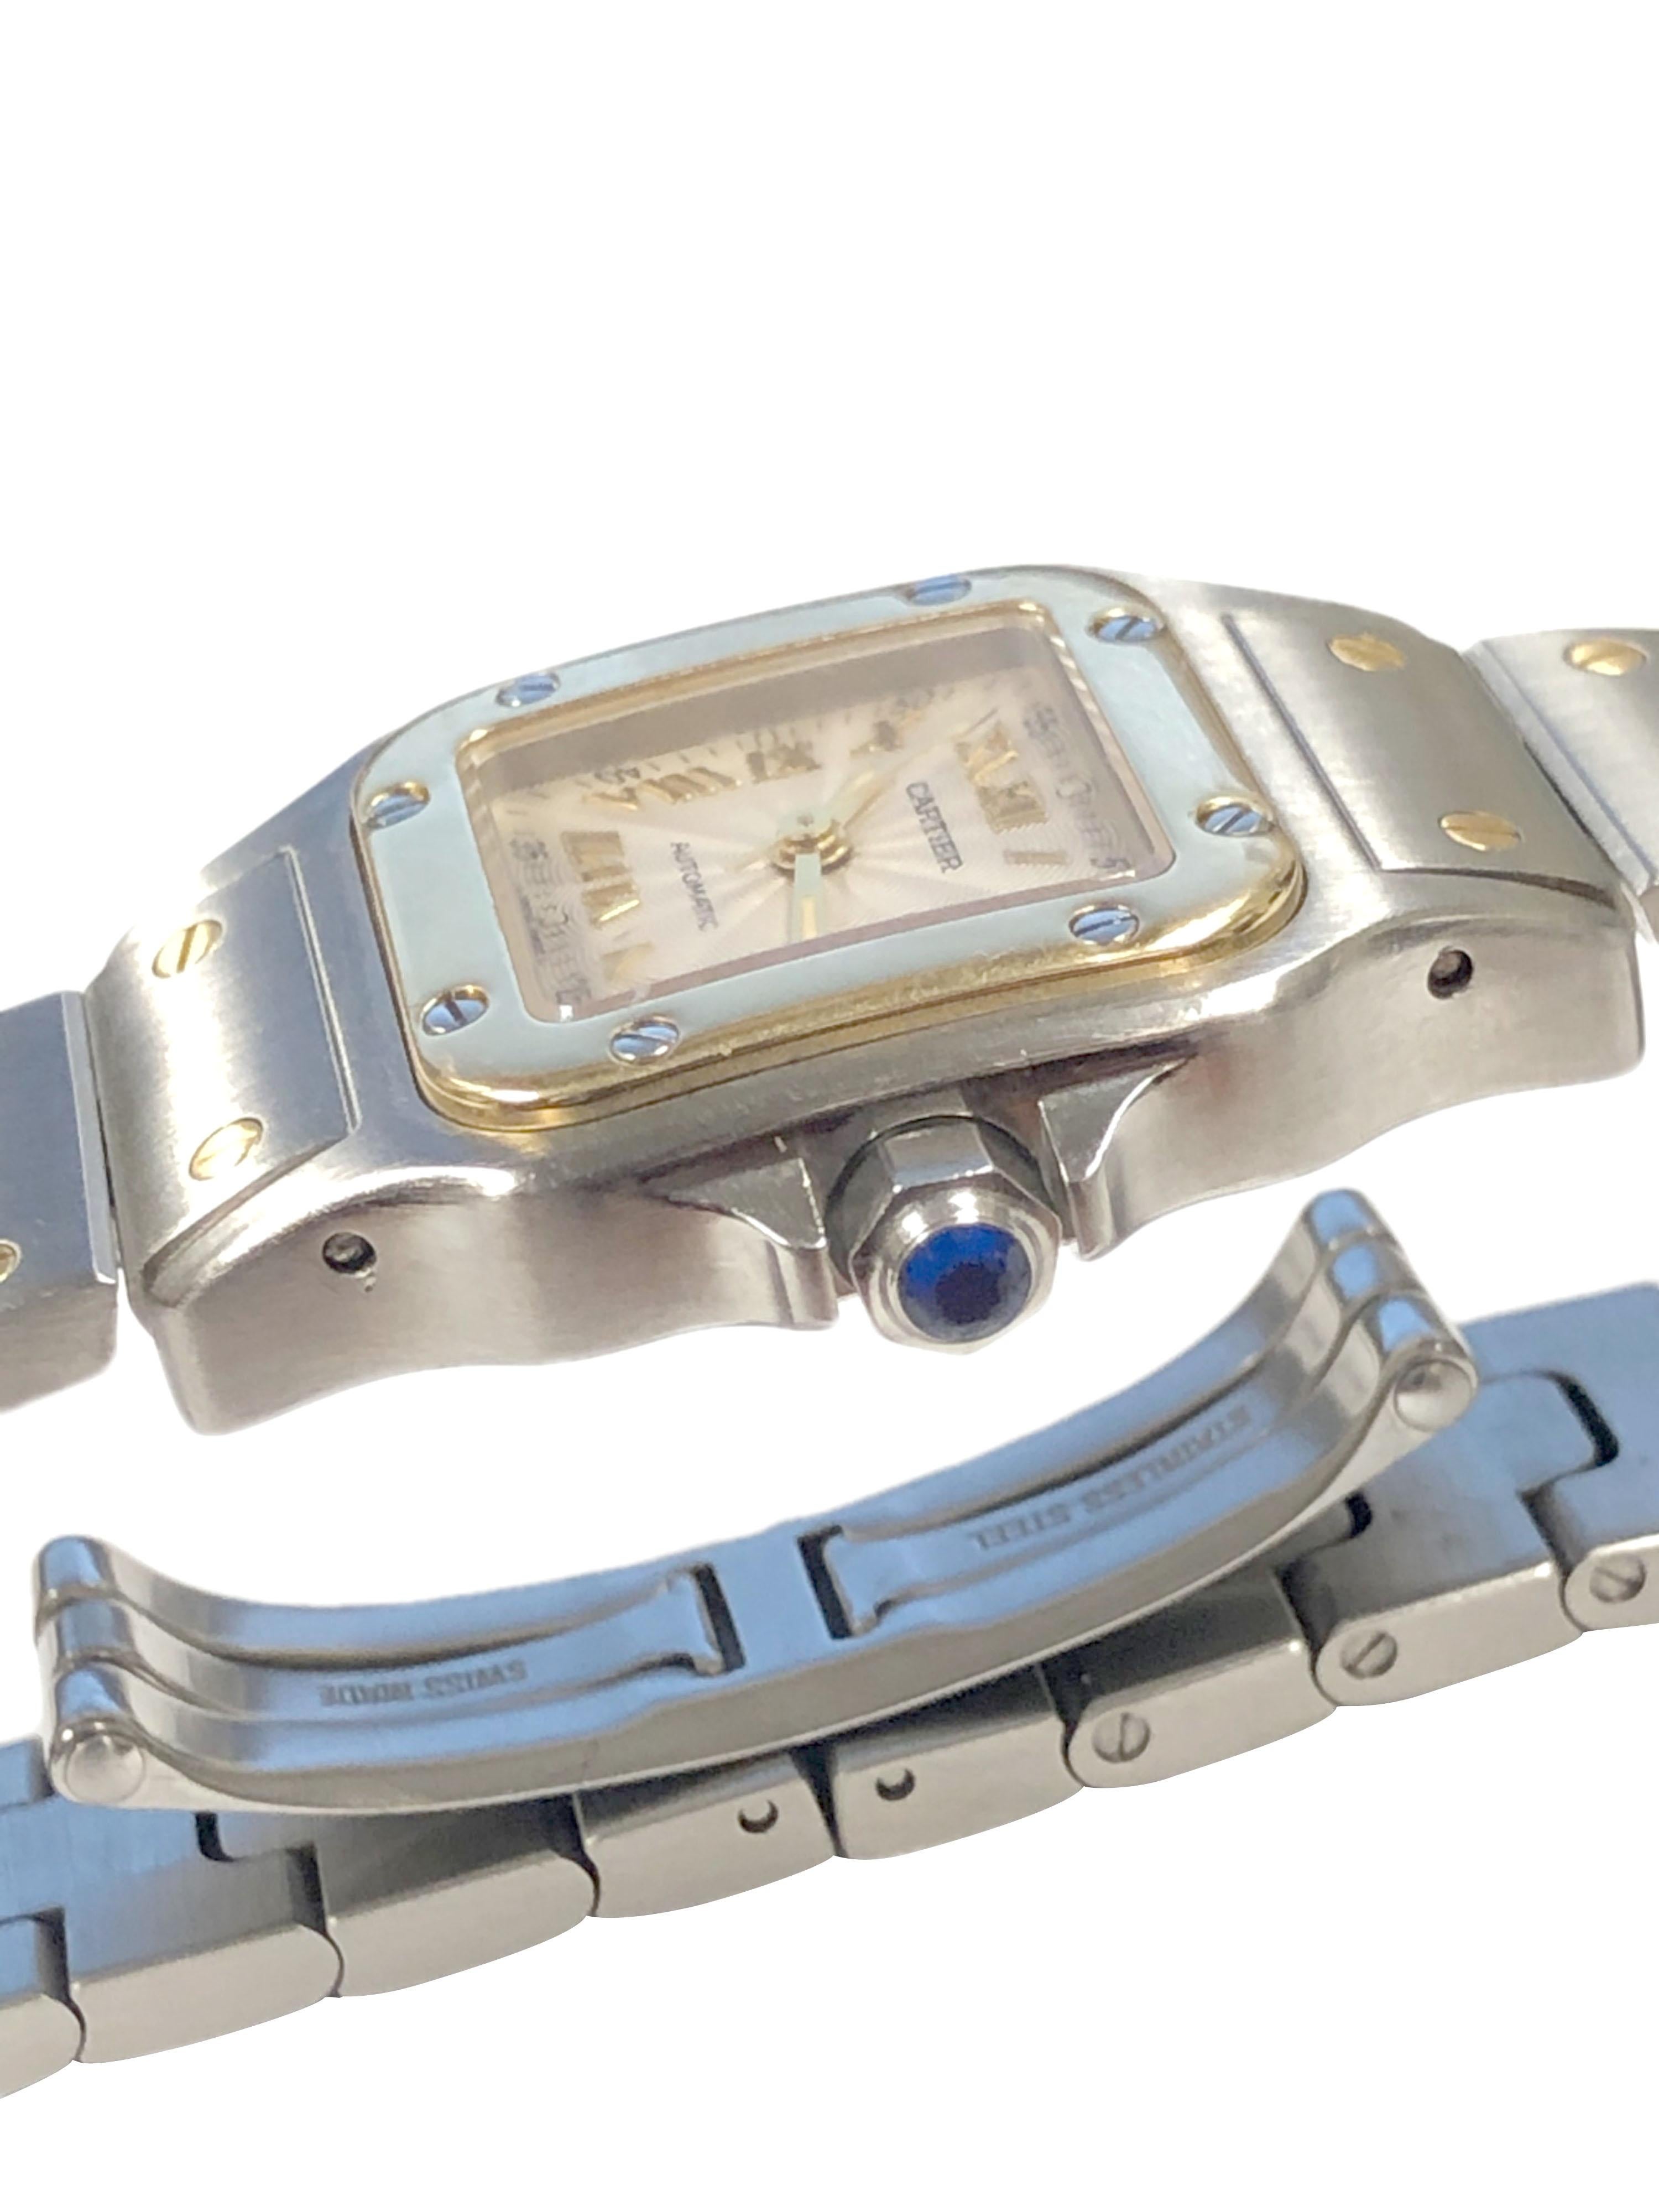 Circa 2005 Cartier Santos Ladies Wrist Watch, 34 X 24 MM boîtier en acier inoxydable avec lunette en or jaune 18K. Mouvement automatique à remontage automatique, cadran argenté avec index en relief en or, fenêtre du calendrier à la position 5 et